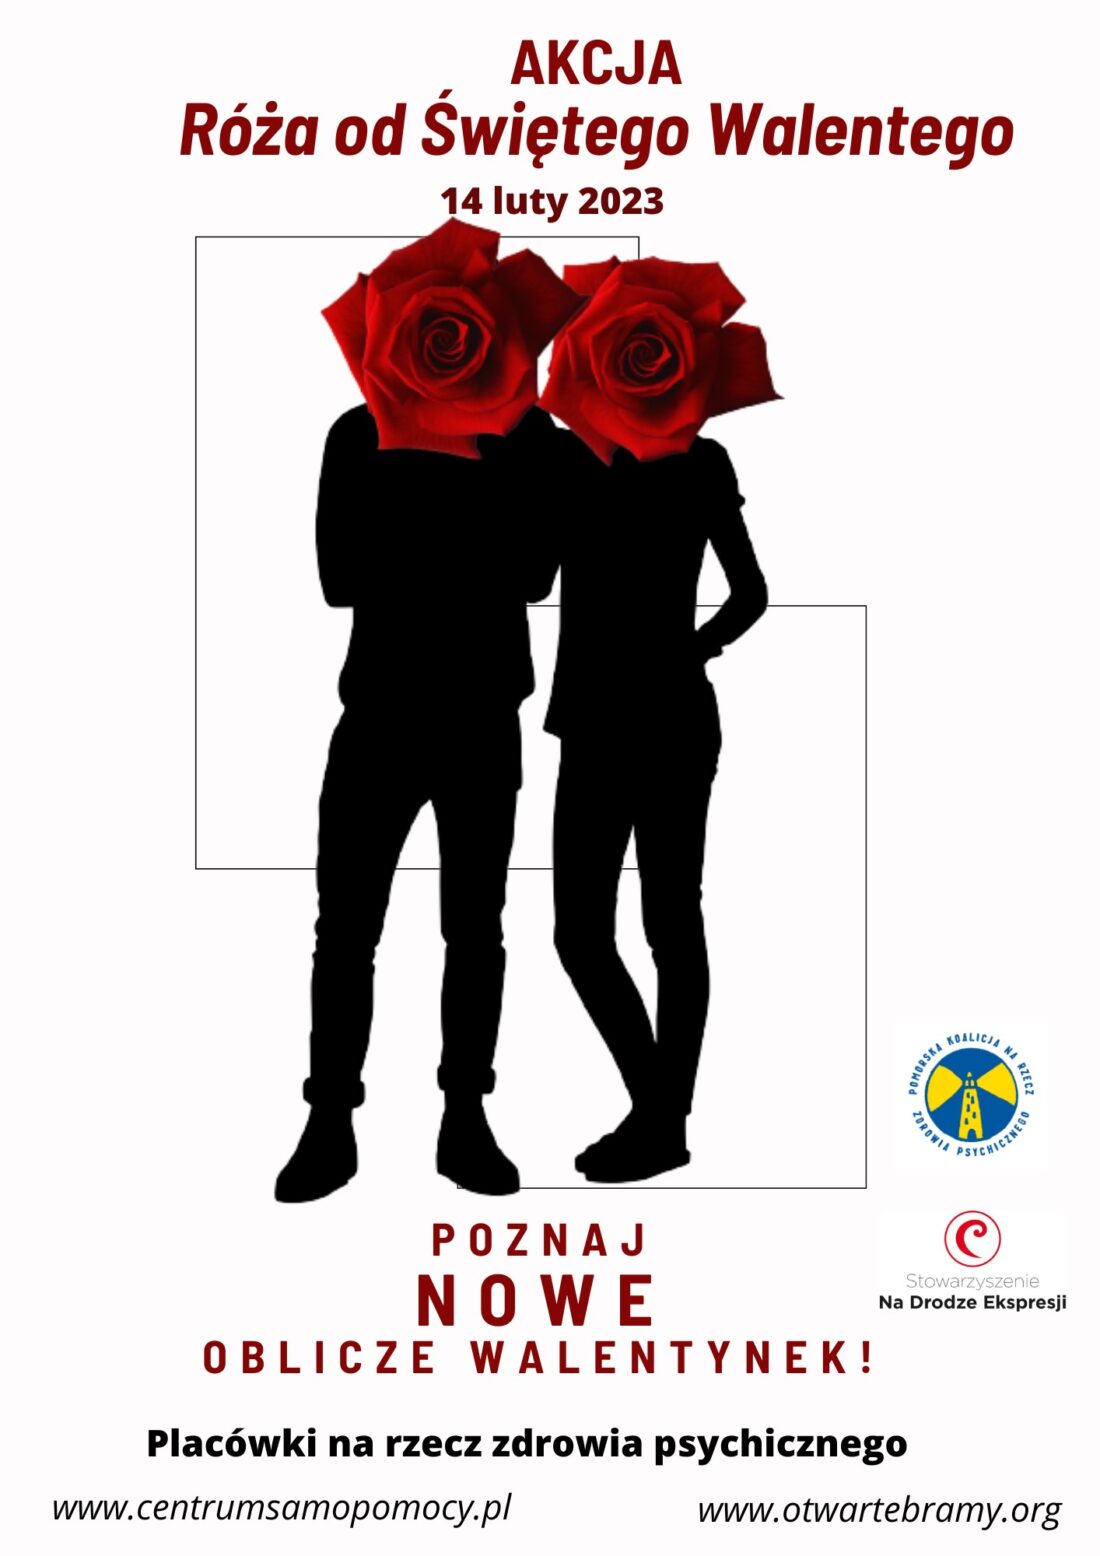 Zdjęcie: Plakat akcji Róża od św. Walentego 2023